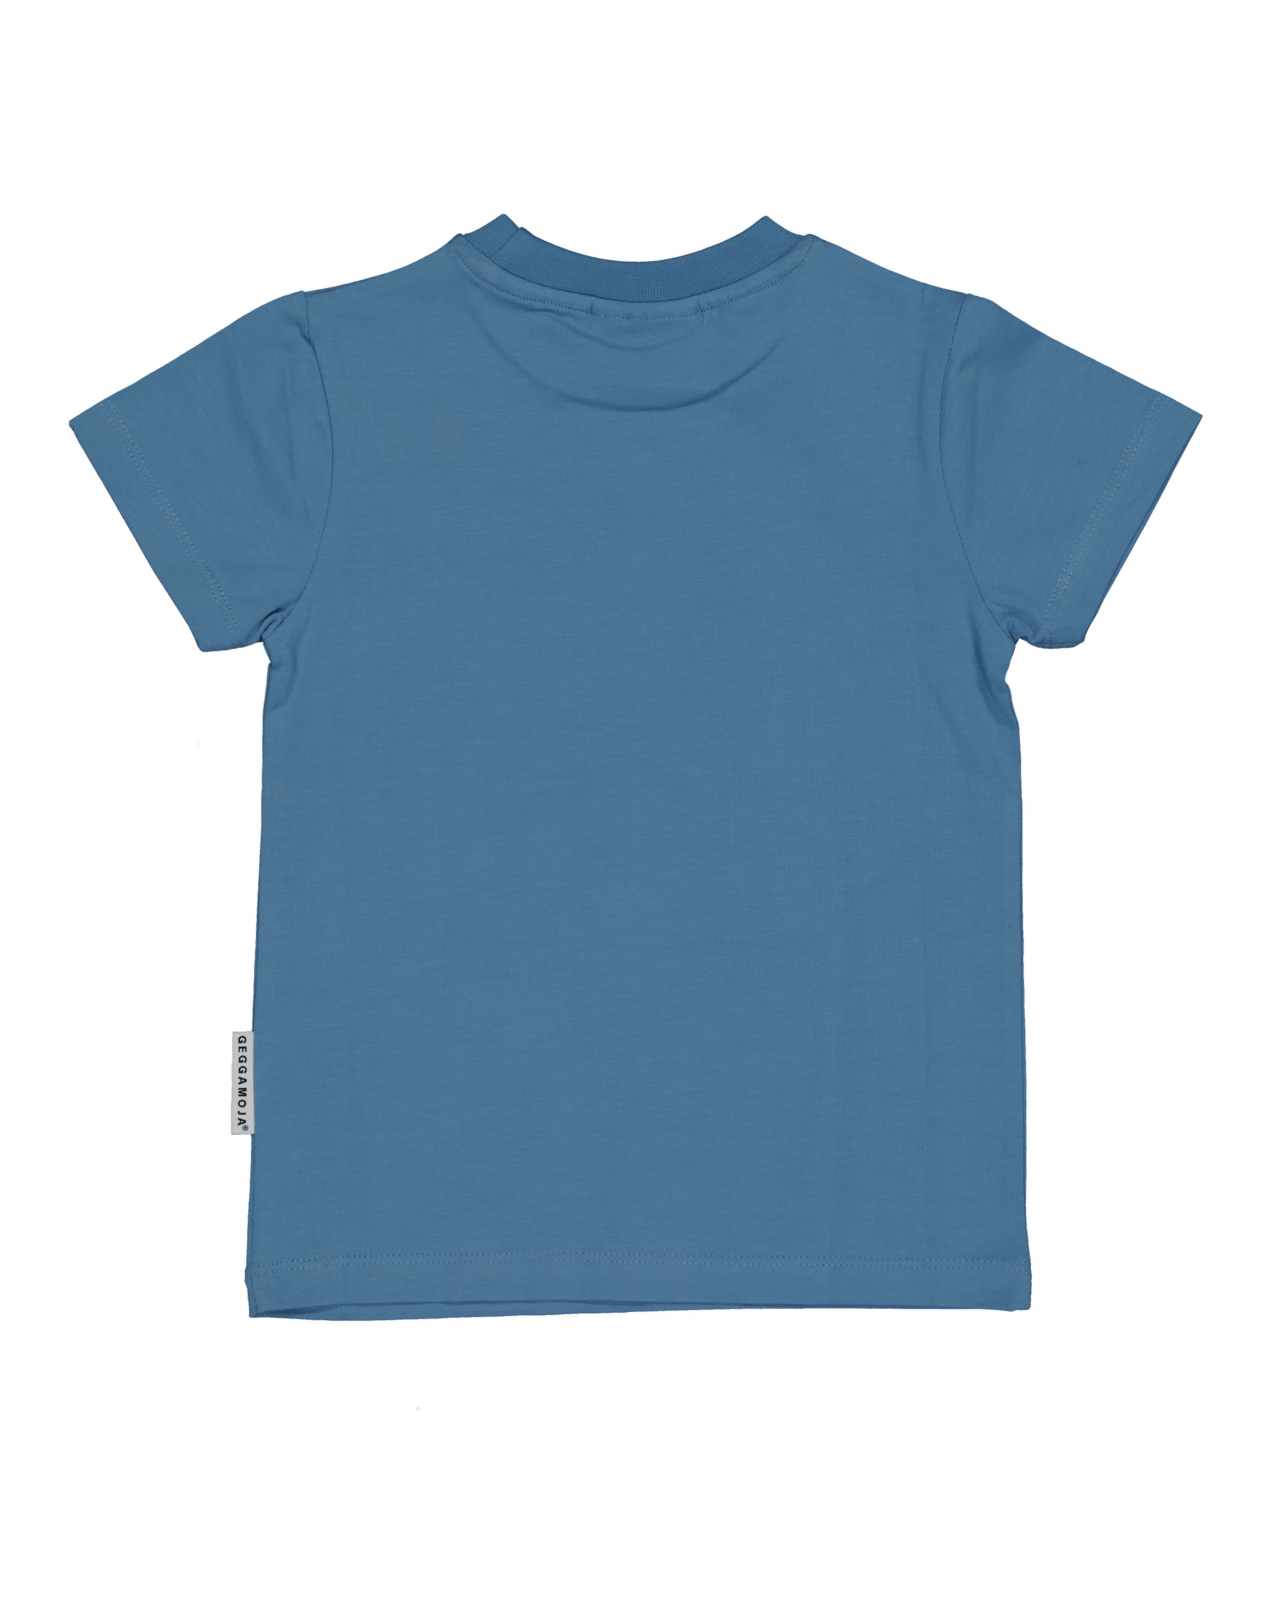 T-shirt Doddi Blå